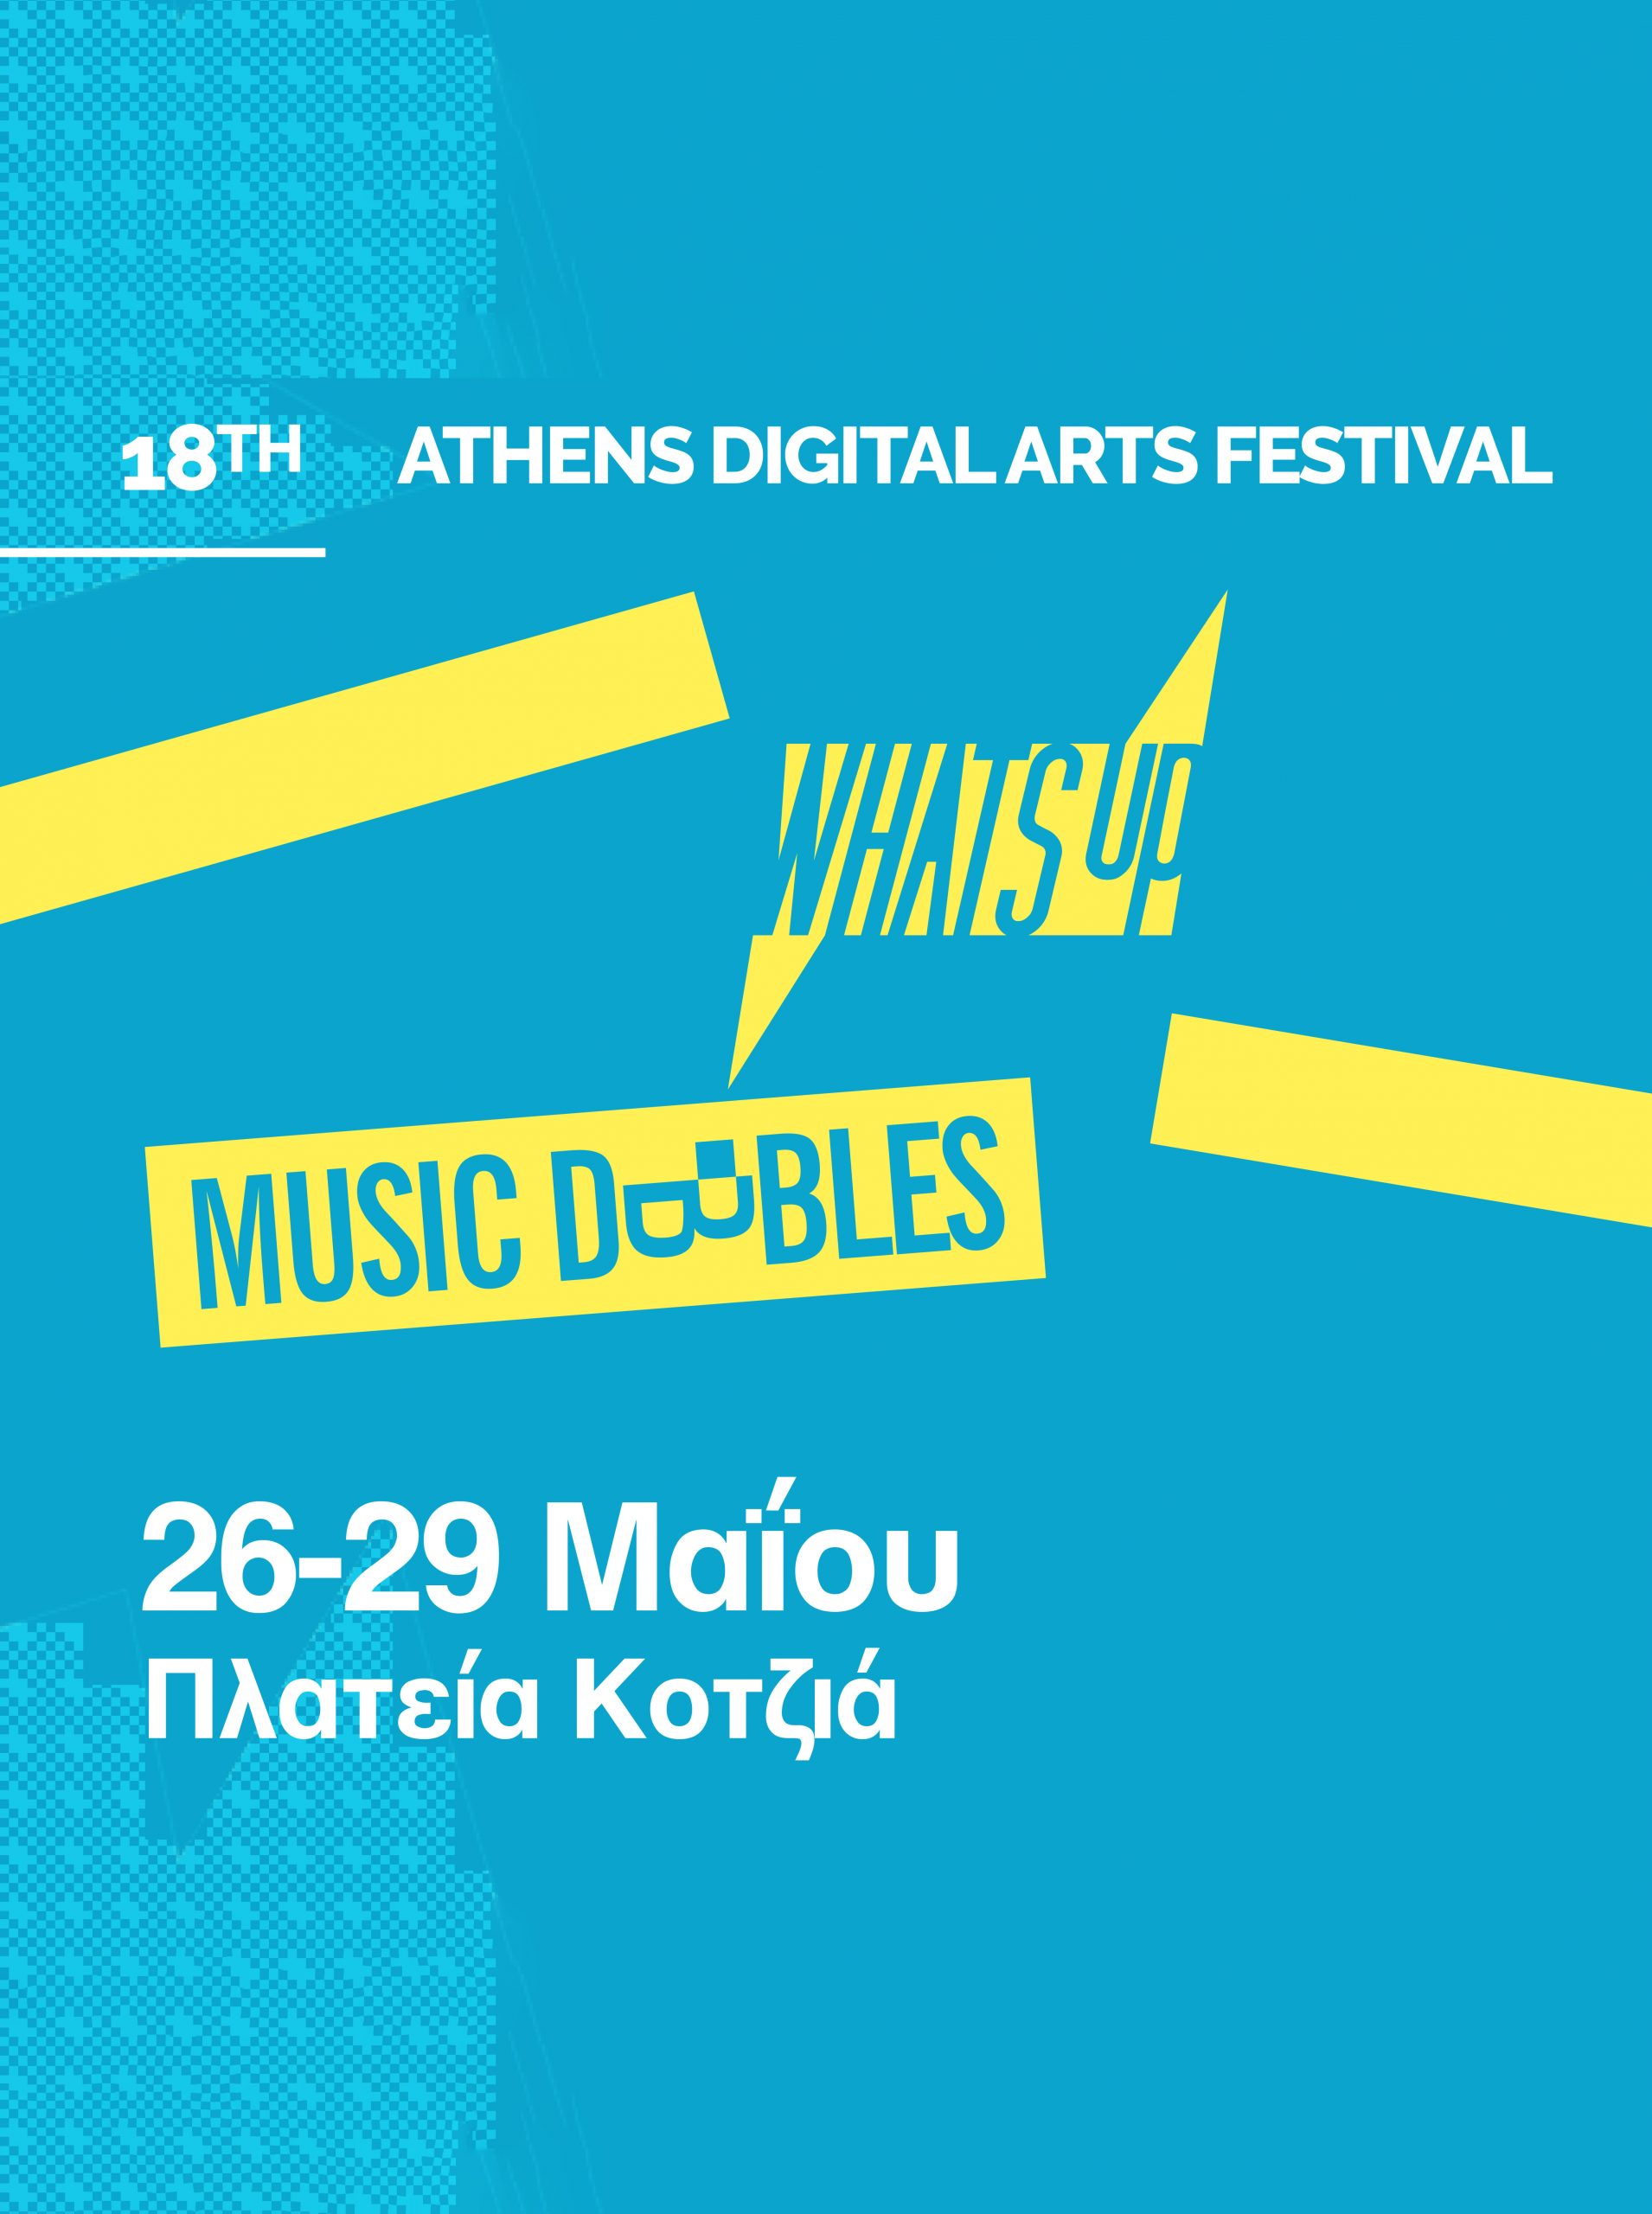 Τι θα συμβεί στη σκηνή του 18ου Athens Digital Arts Festival στην Πλατεία Κοτζιά;